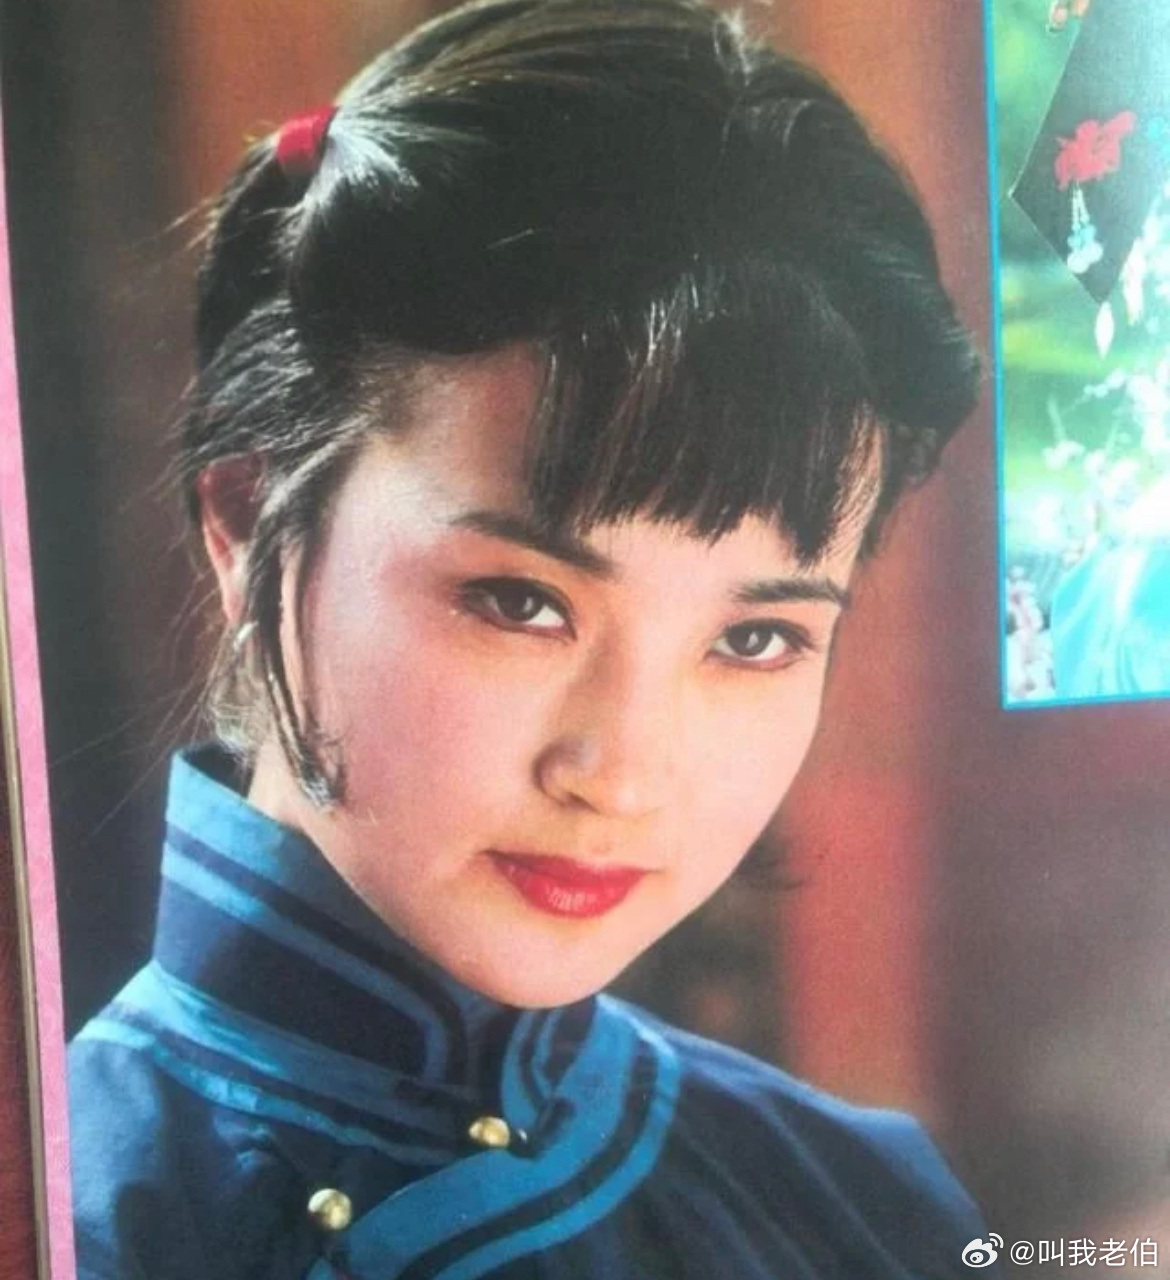 感觉刘晓庆没有少女时代,即便是年轻的时候也没有少女感,所以年纪大了